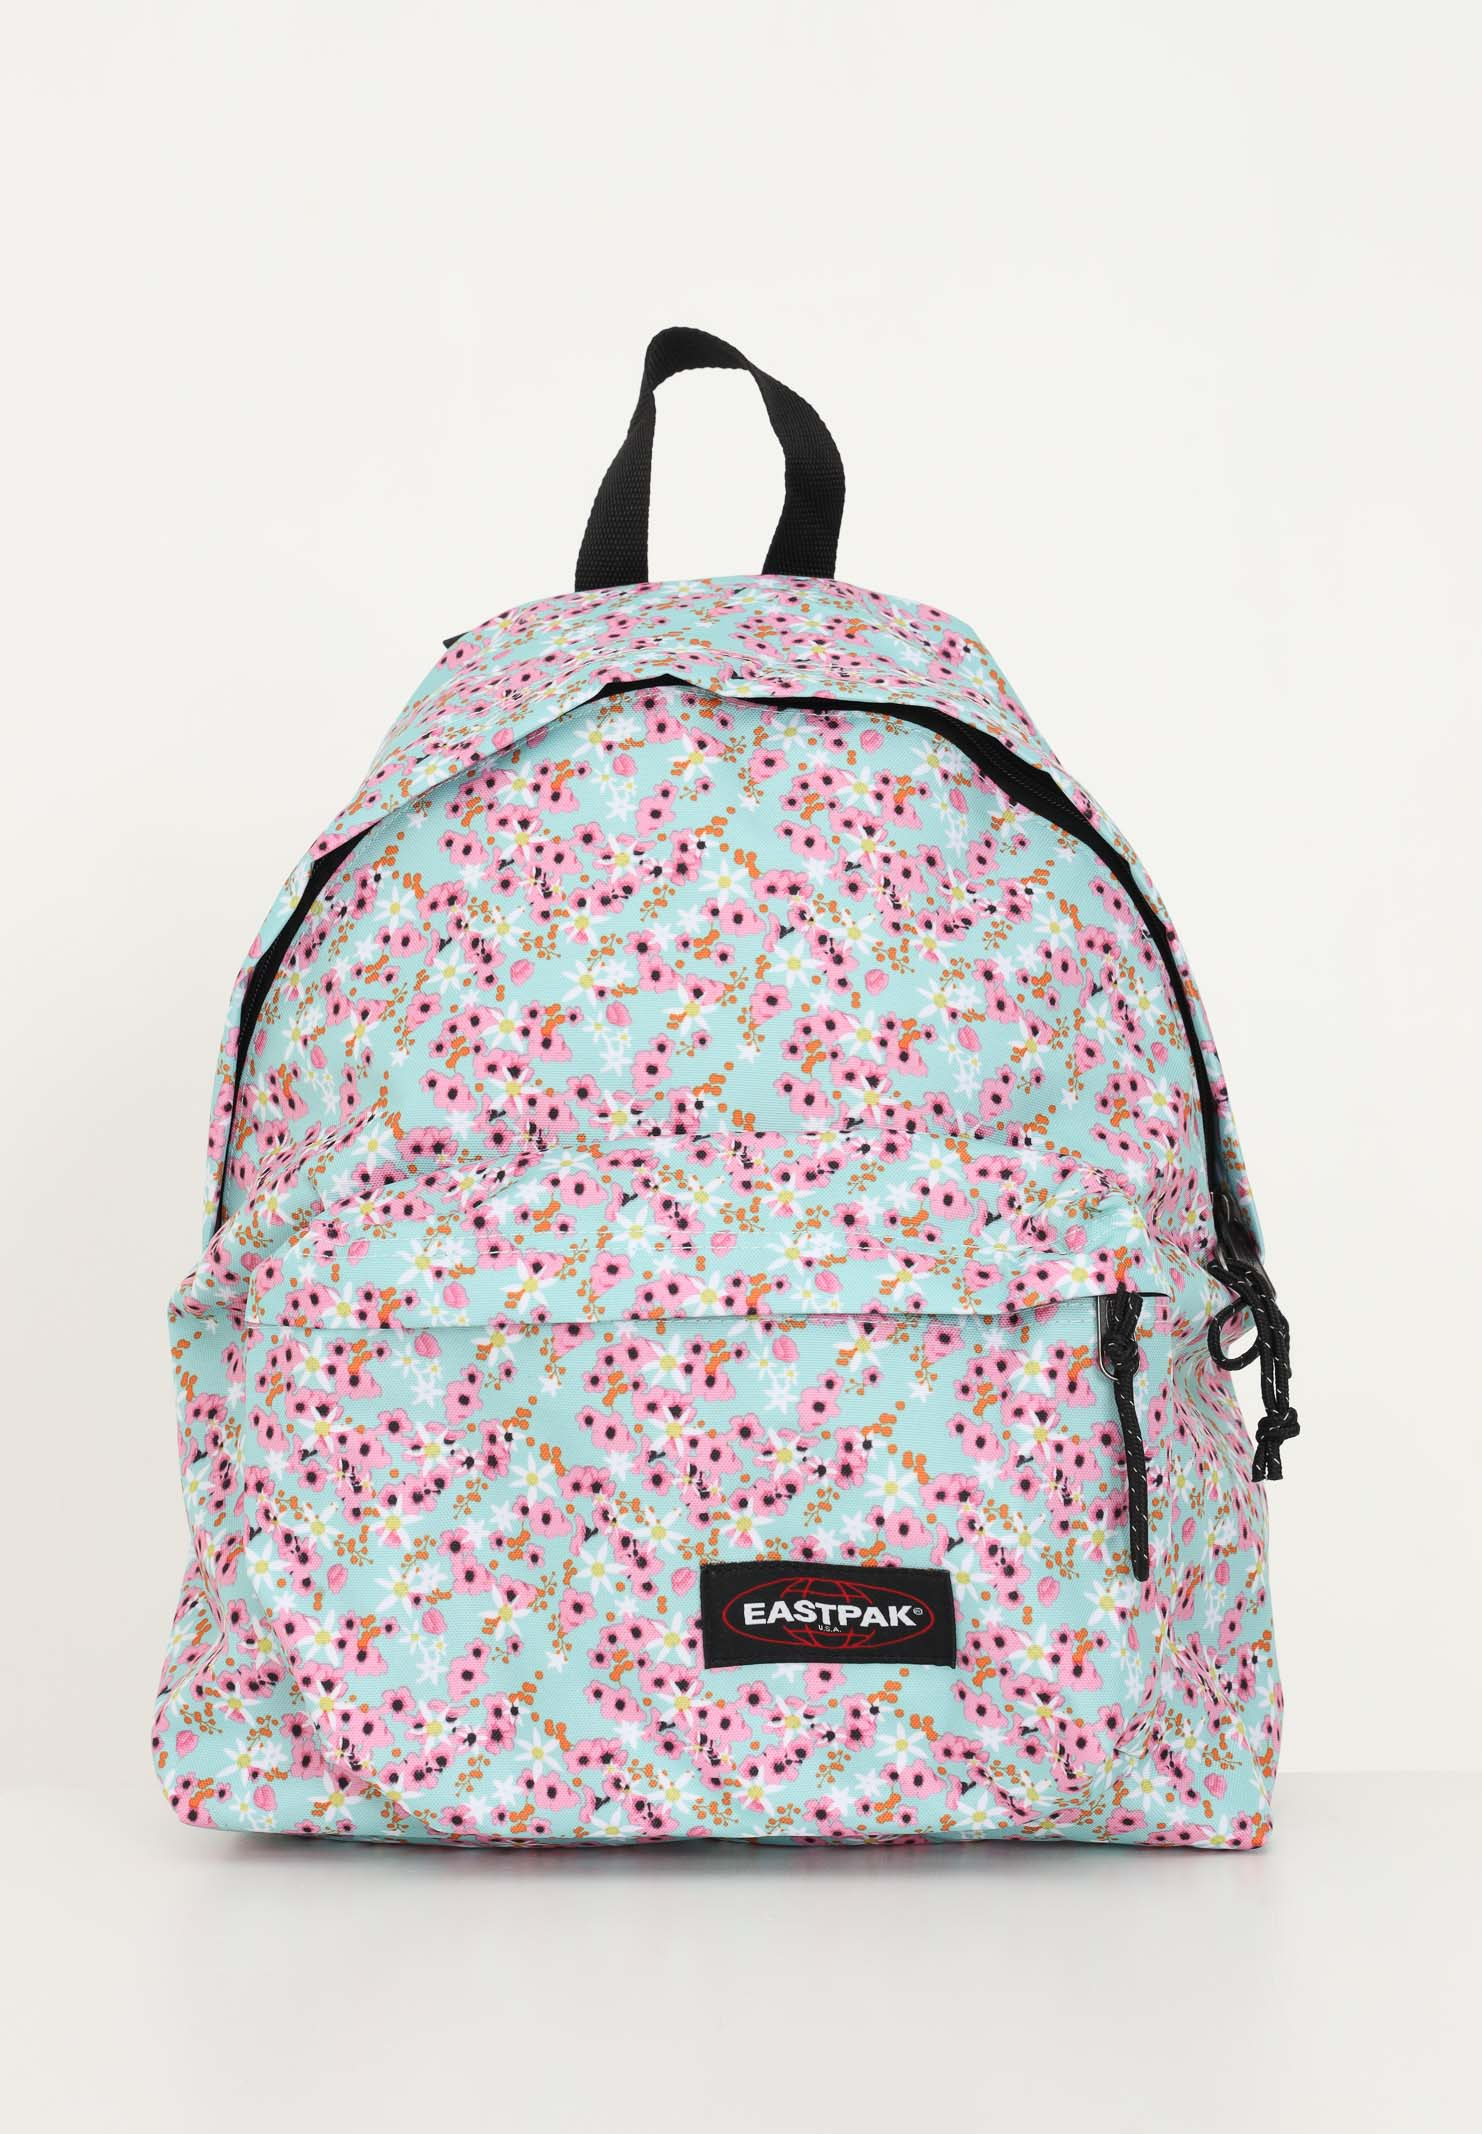 Eastpak Backpack Floral Pattern